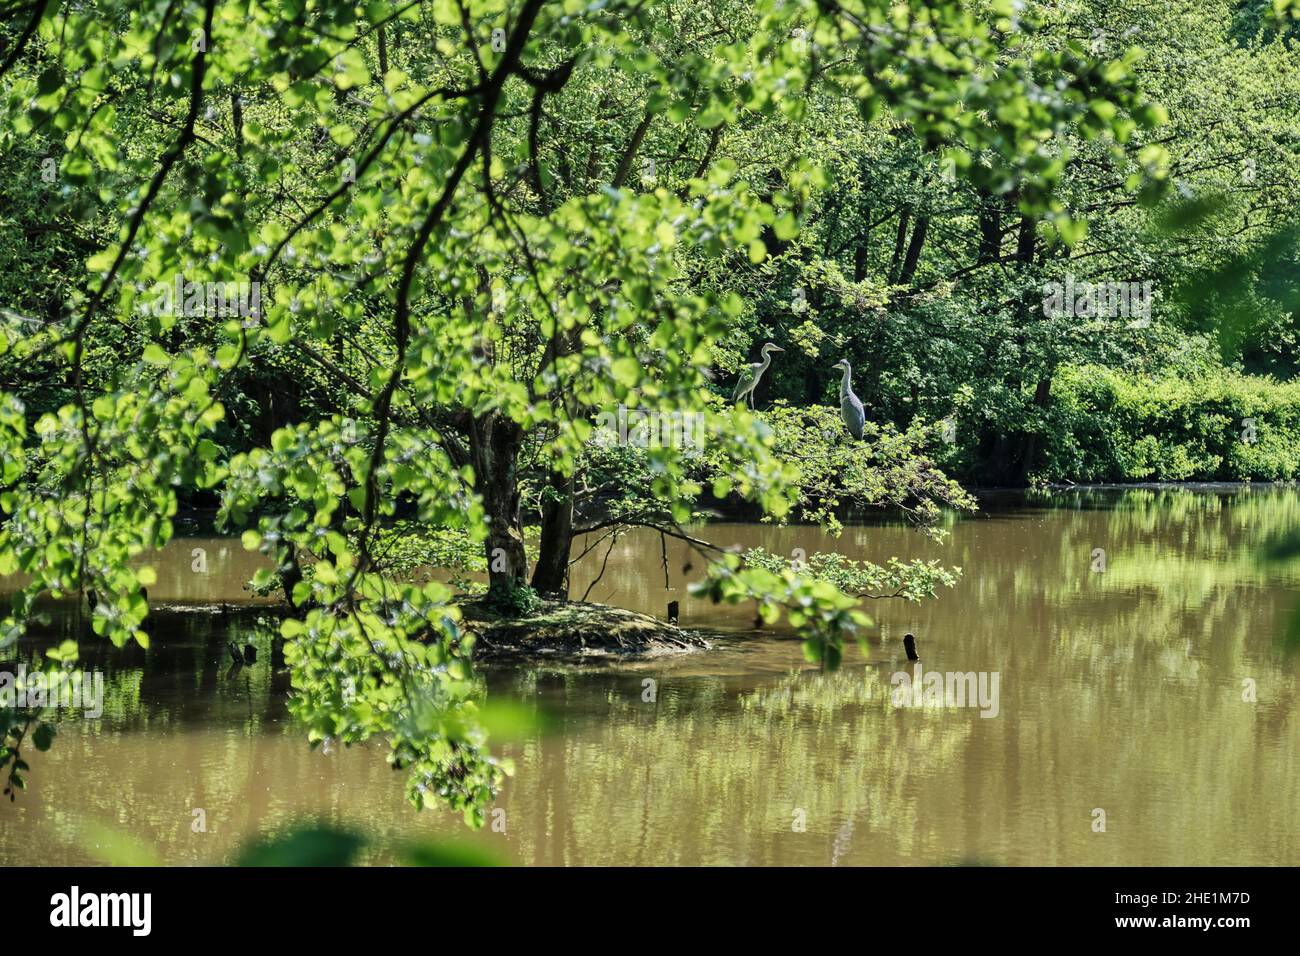 Graureiher, Ardea cinerea, ein langbeiniger räuberischer Watvögel der Familie der Reiher, Ardeidae, sitzt in einem Baum in der Mitte eines Sees Stockfoto